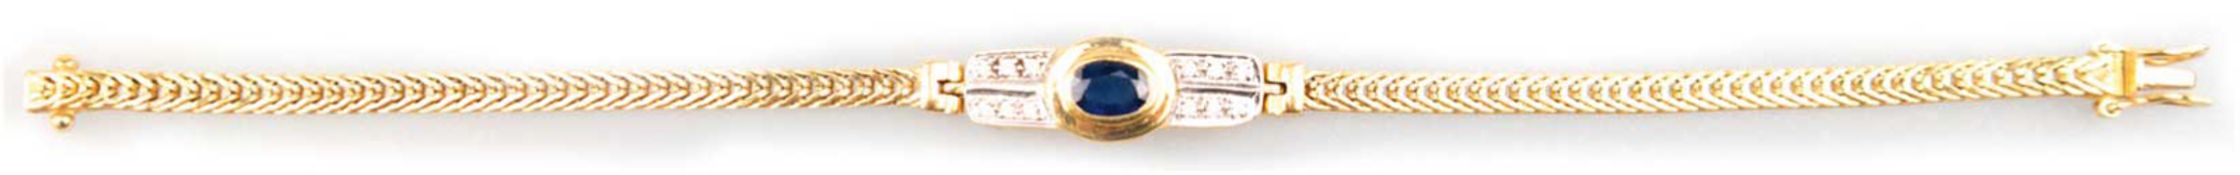 Armband, 750er GG/WG, Mittelteil besetzt mit oval facettiertem Saphir und 12 kleinen Brillanten, Ar